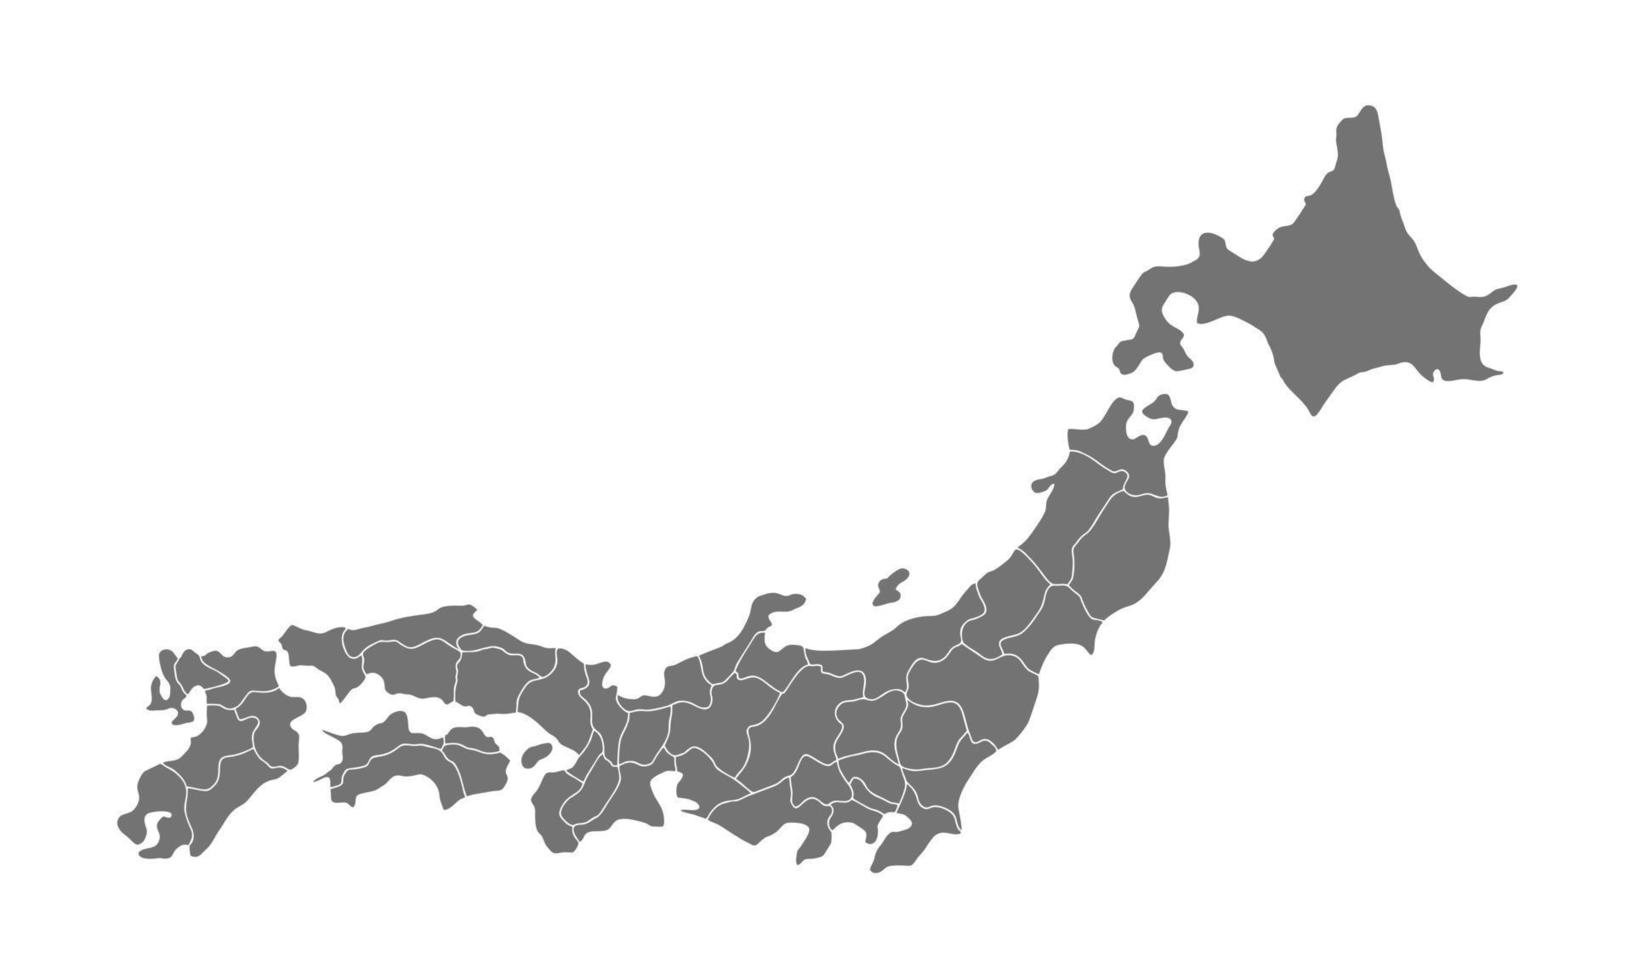 grigio Giappone carta geografica vettore